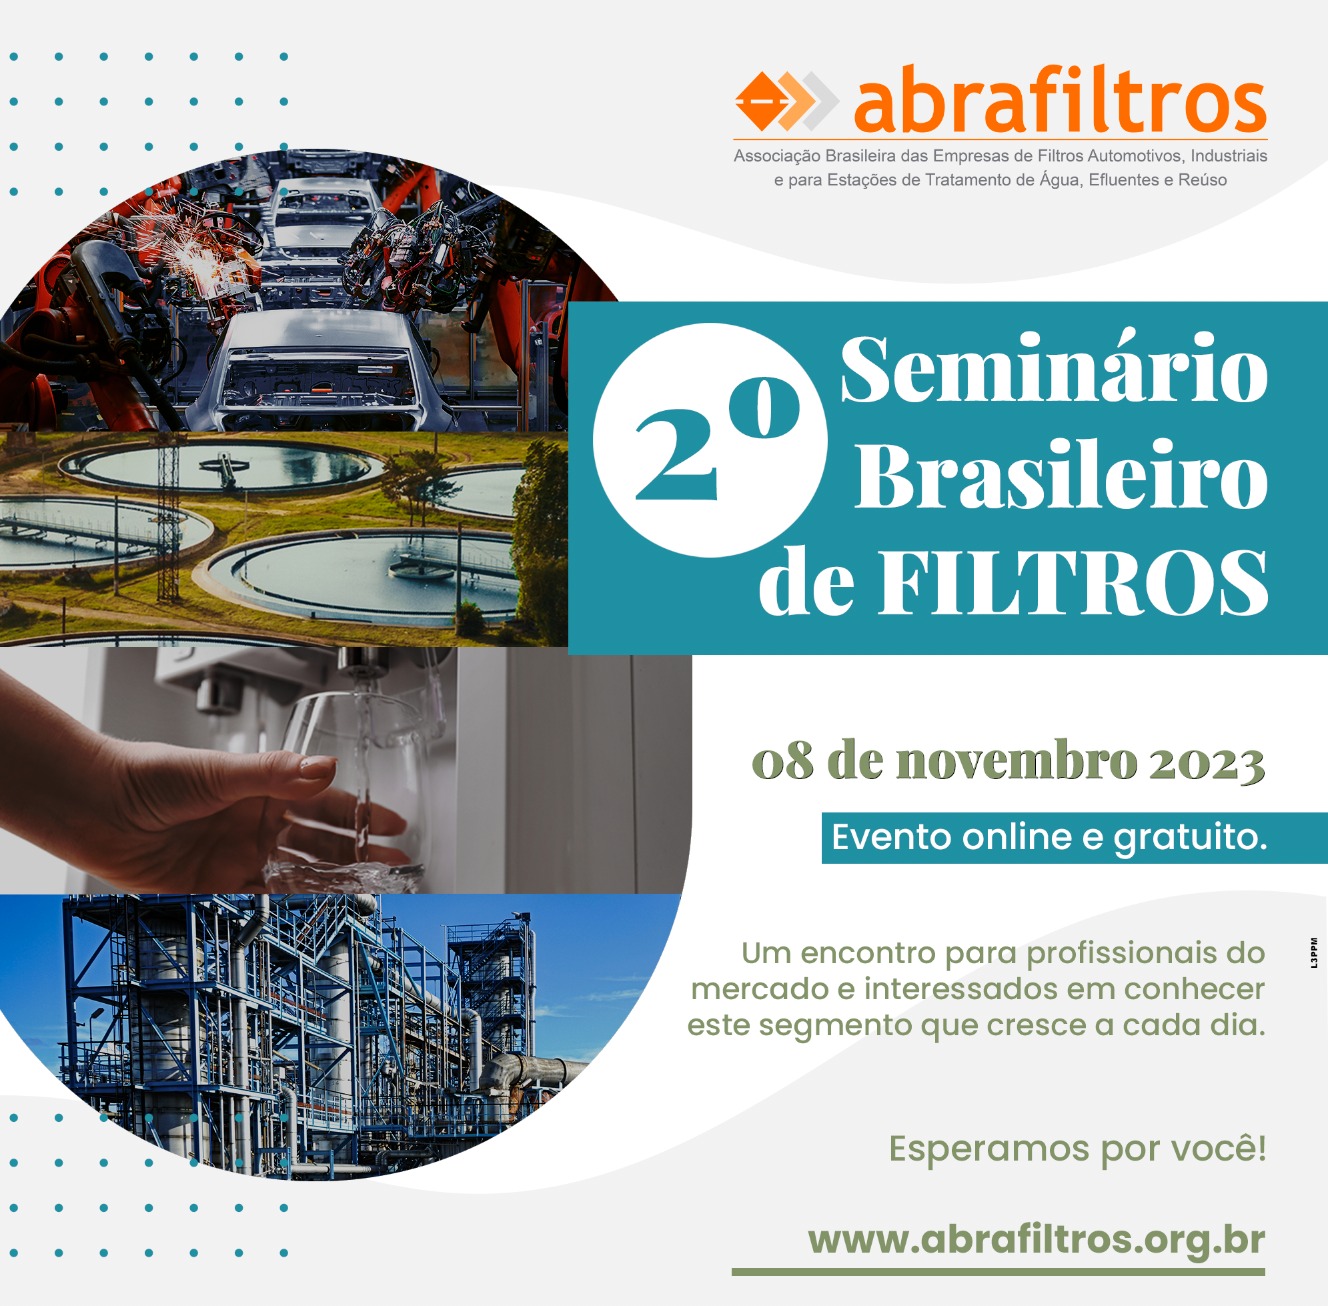 2° Seminário Brasileiro de Filtros tem apoio de mais de 30 organizações